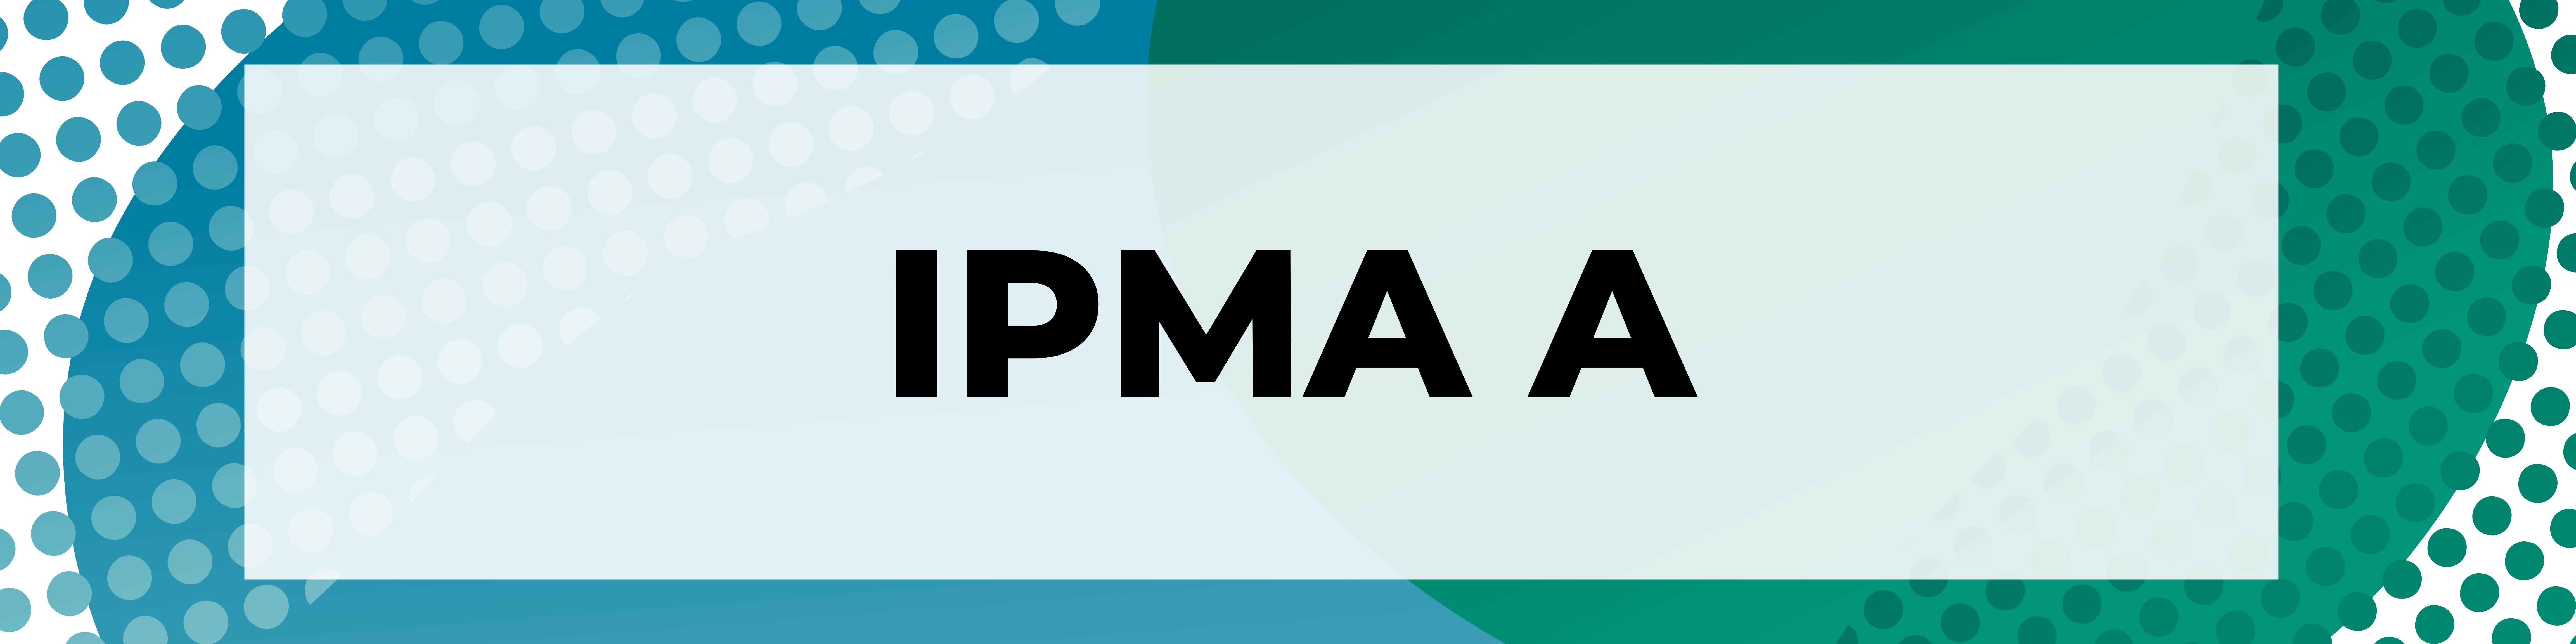 IPMA A Banner